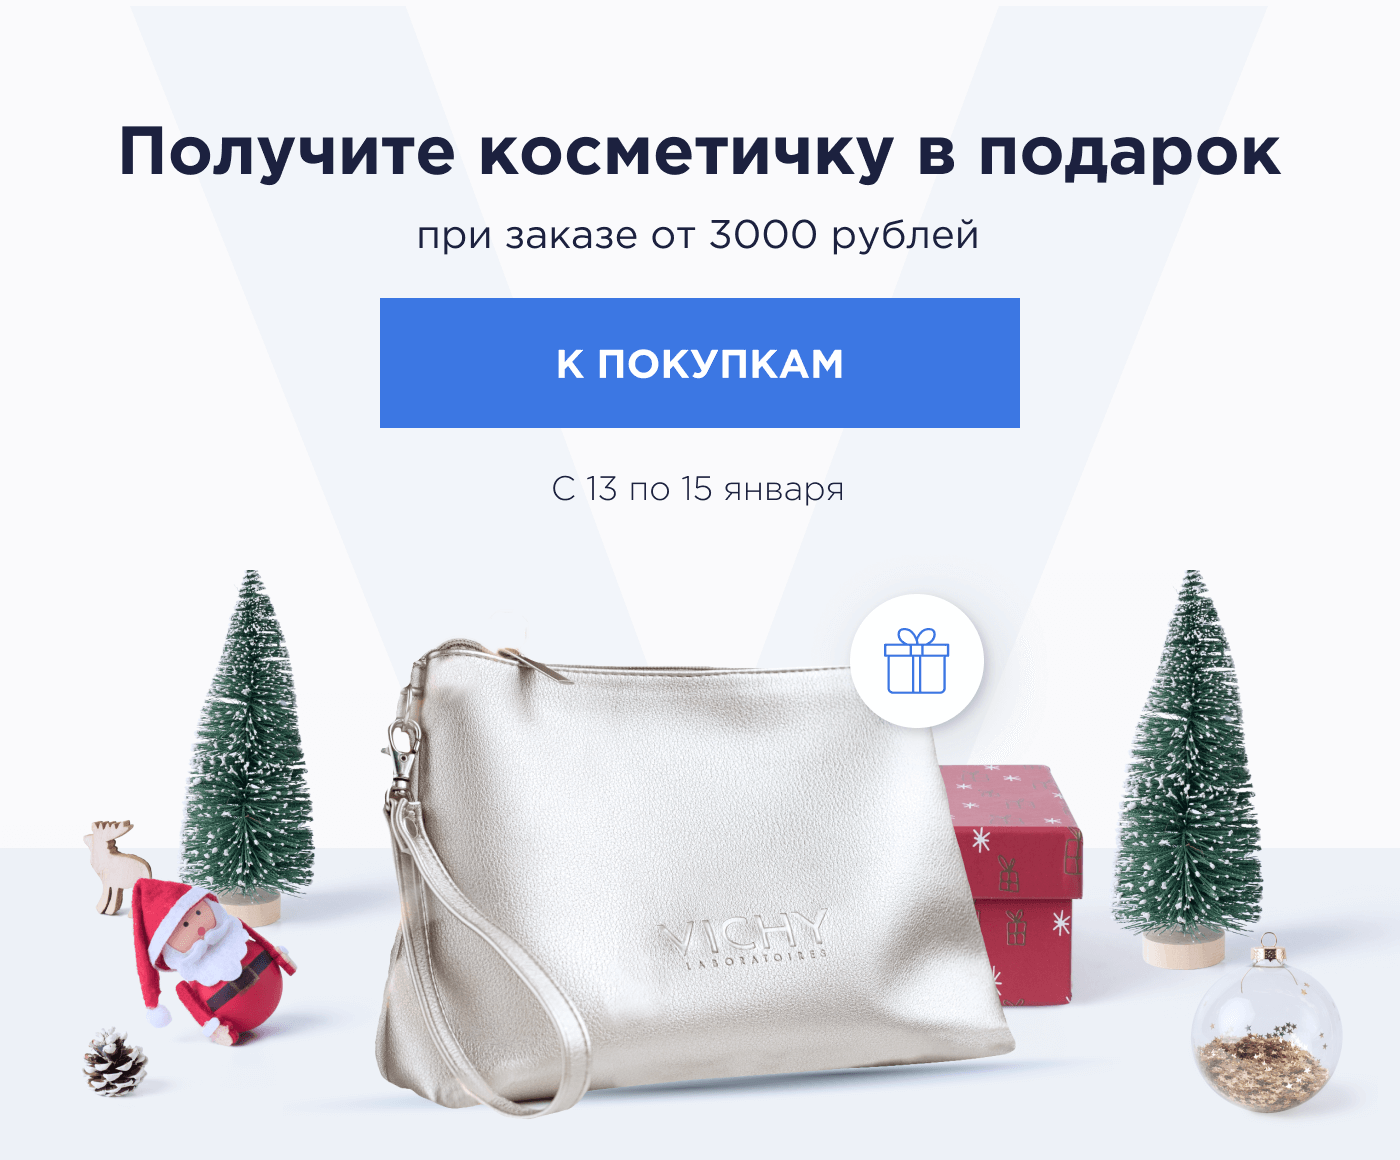 Получите косметичку в подарок при заказе от 3000 рублей С 13 по 15 января | К покупкам